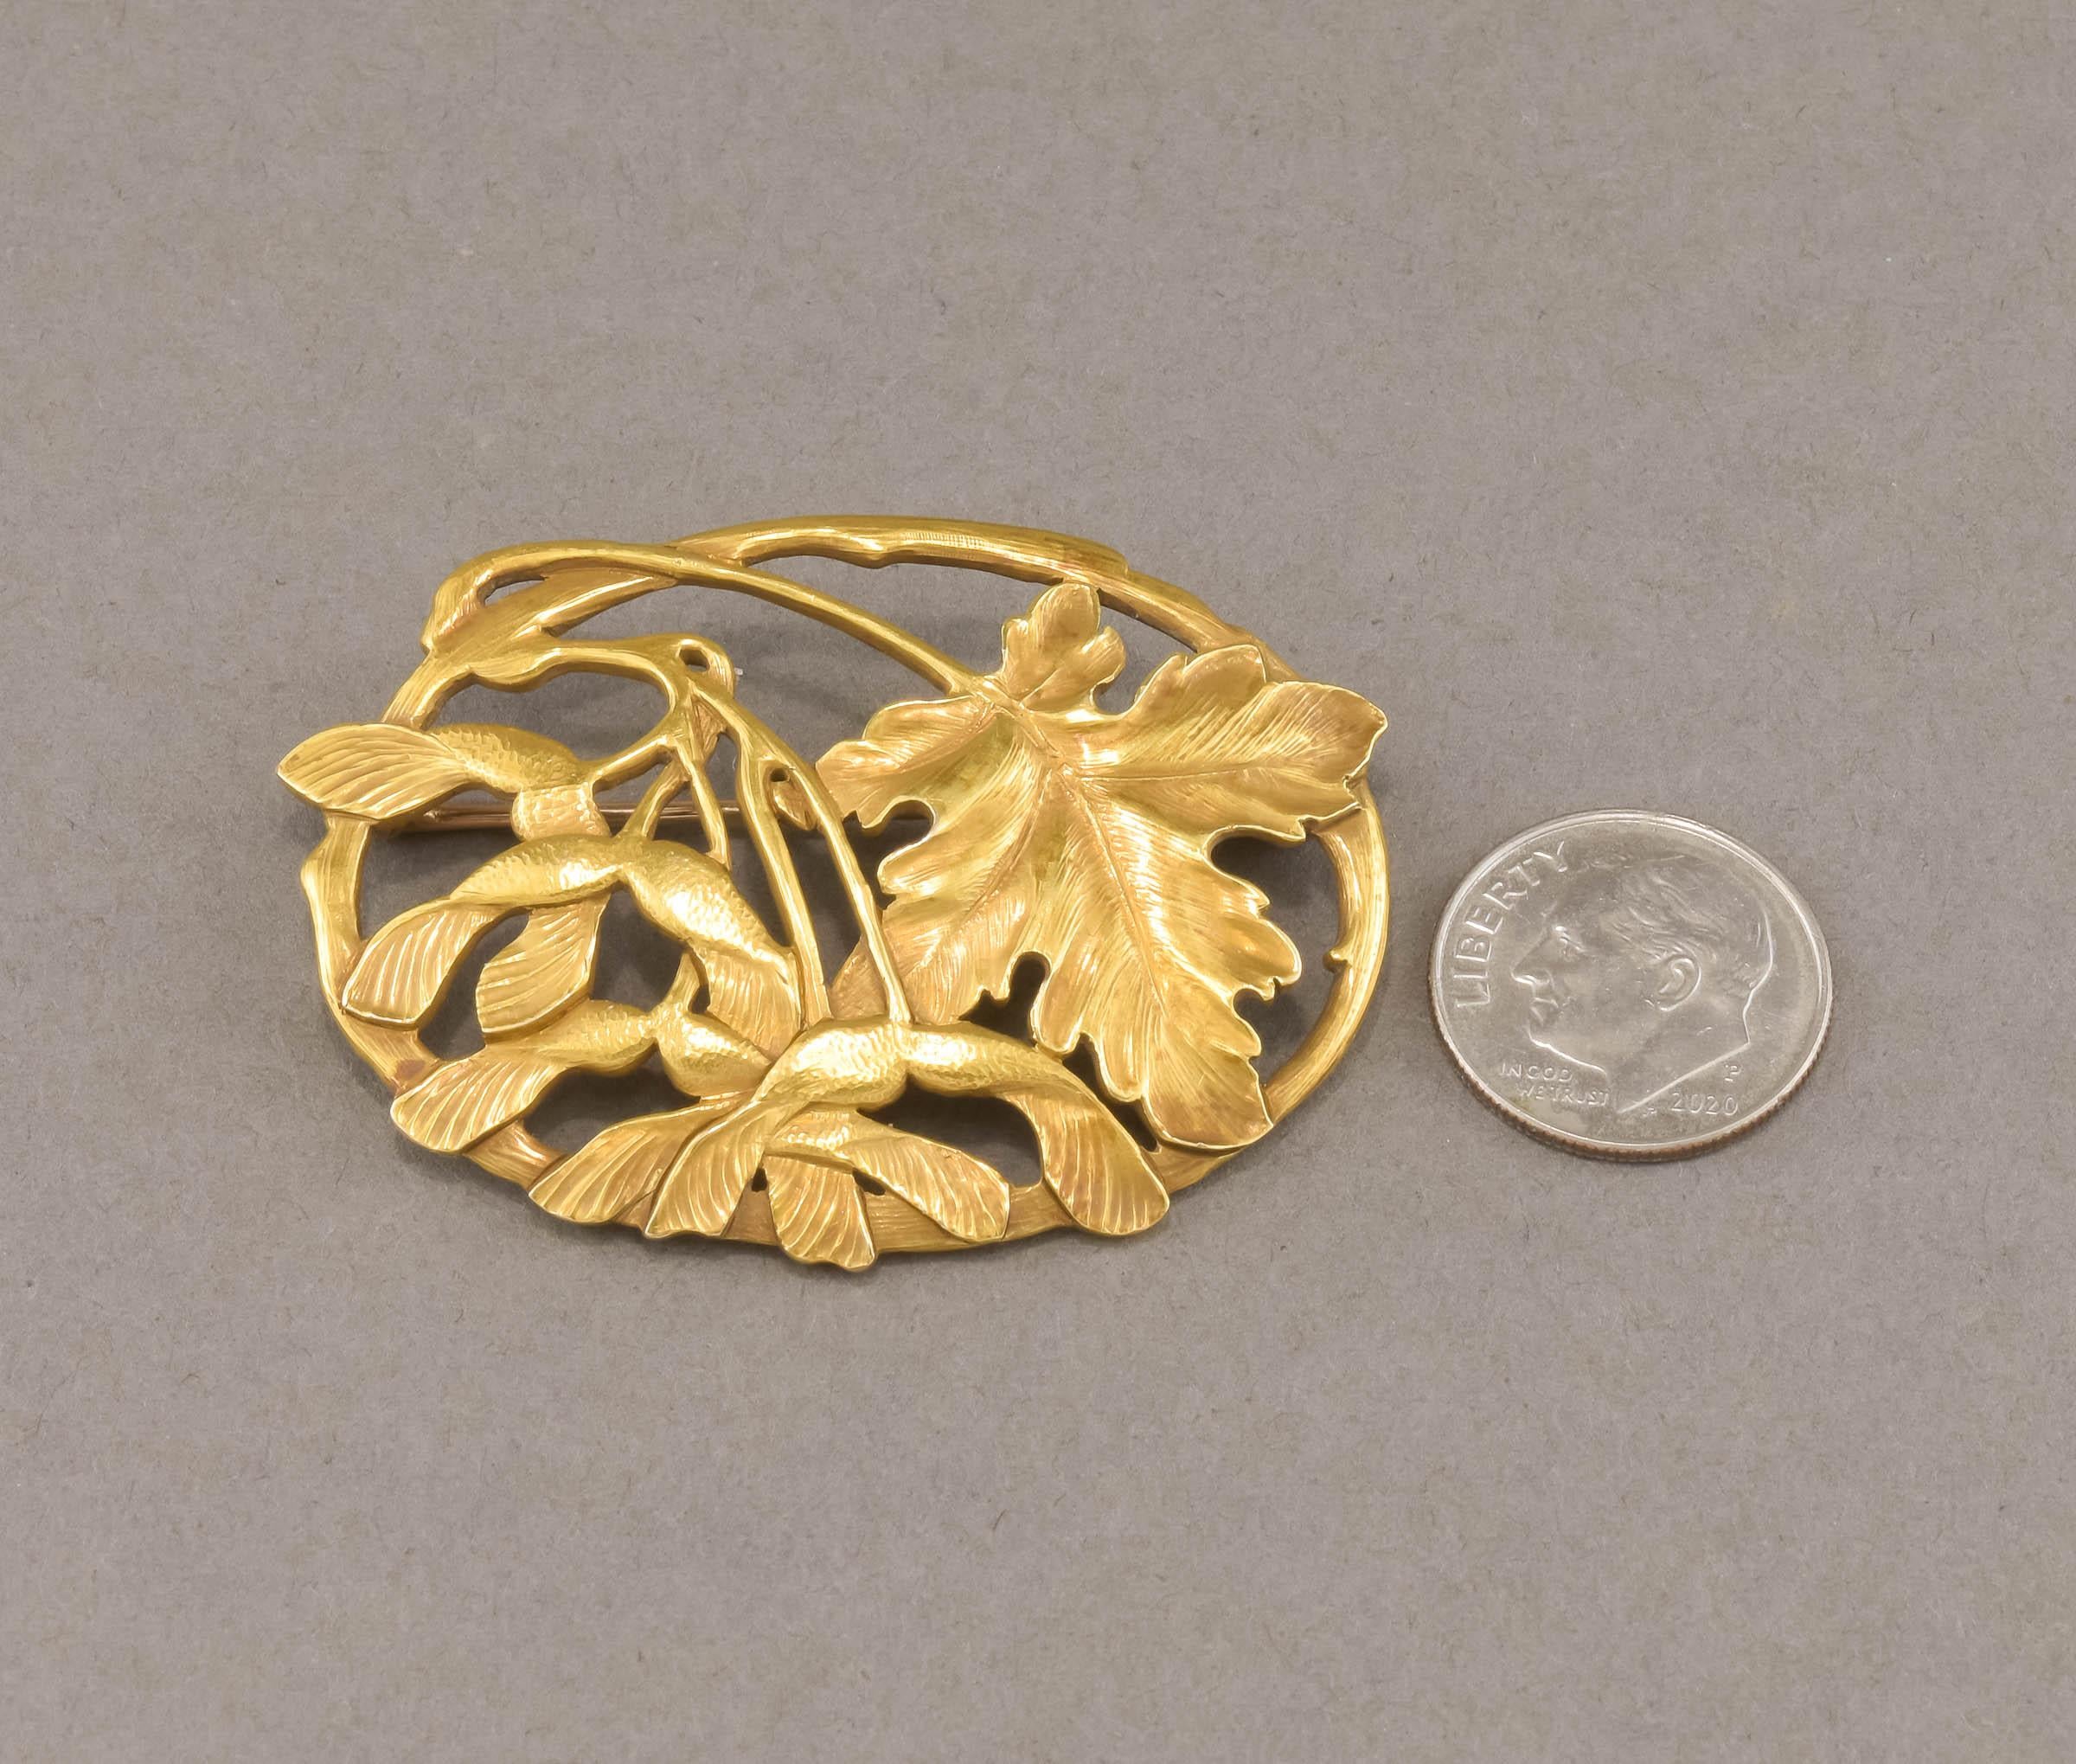 Antique Arts & Crafts 18K Gold Brooch by Potter Studio - Large Foliate Design 4